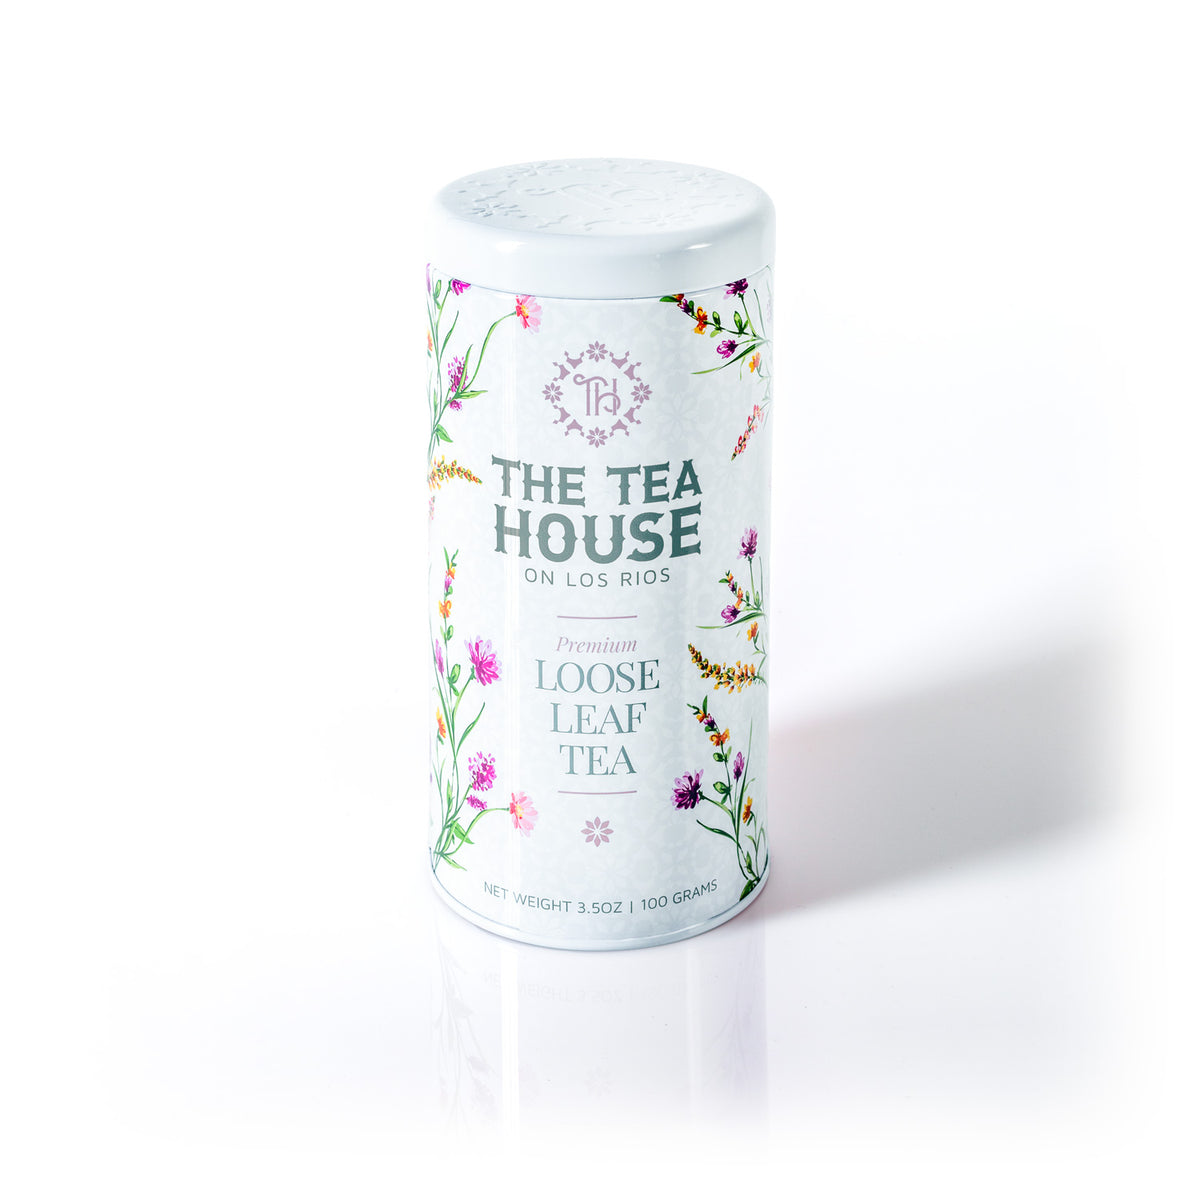 NEW Tea House on Los Rios Loose Leaf Tea Tin 100g